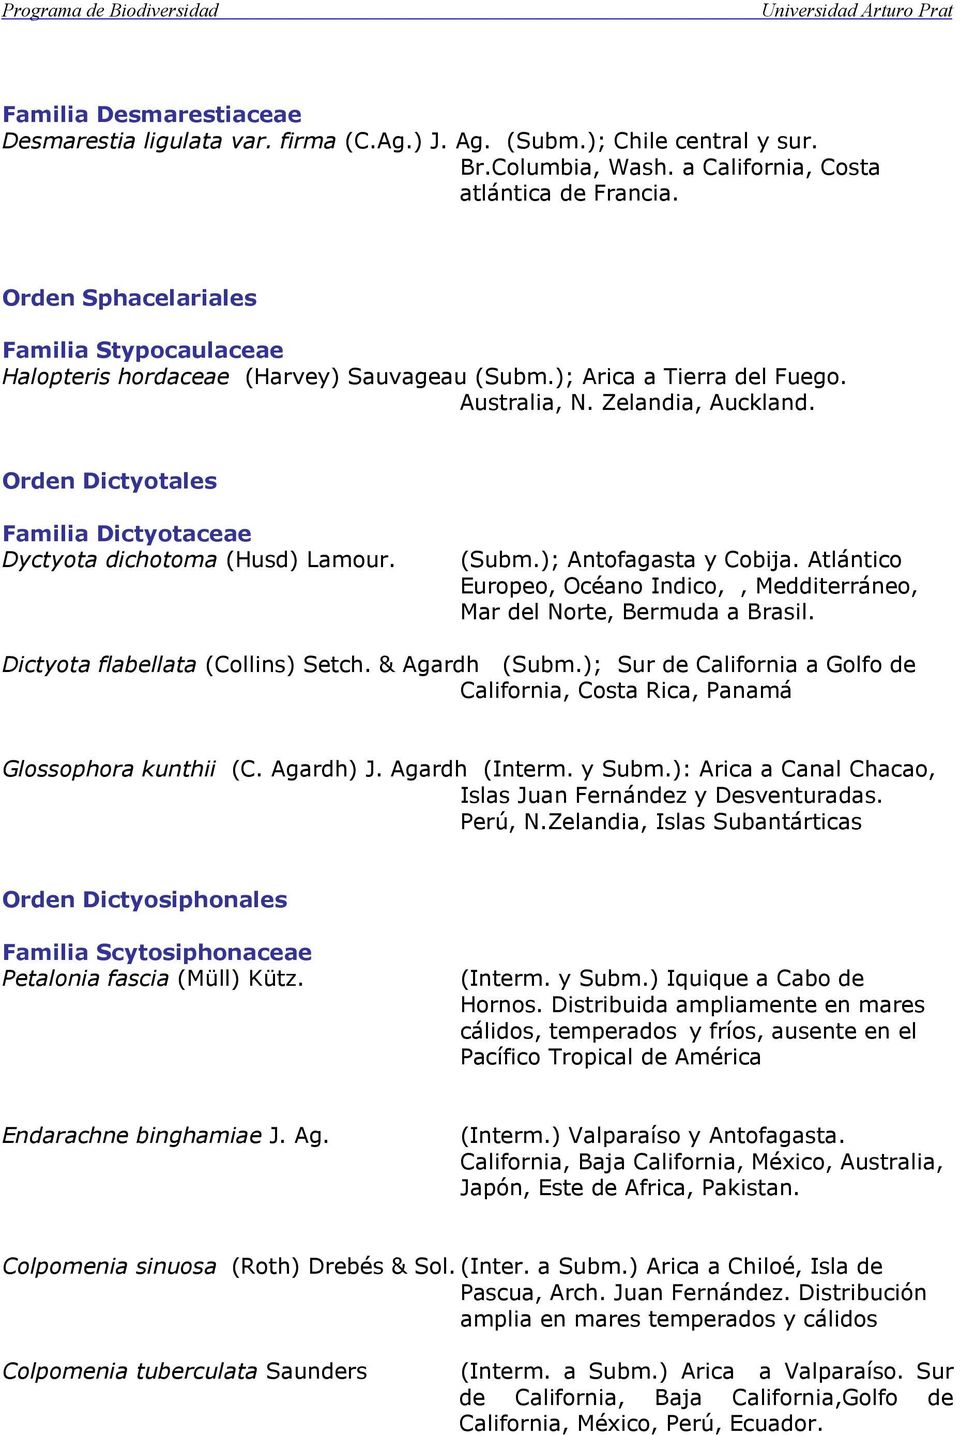 Orden Dictyotales Familia Dictyotaceae Dyctyota dichotoma (Husd) Lamour. (Subm.); Antofagasta y Cobija. Atlántico Europeo, Océano Indico,, Medditerráneo, Mar del Norte, Bermuda a Brasil.